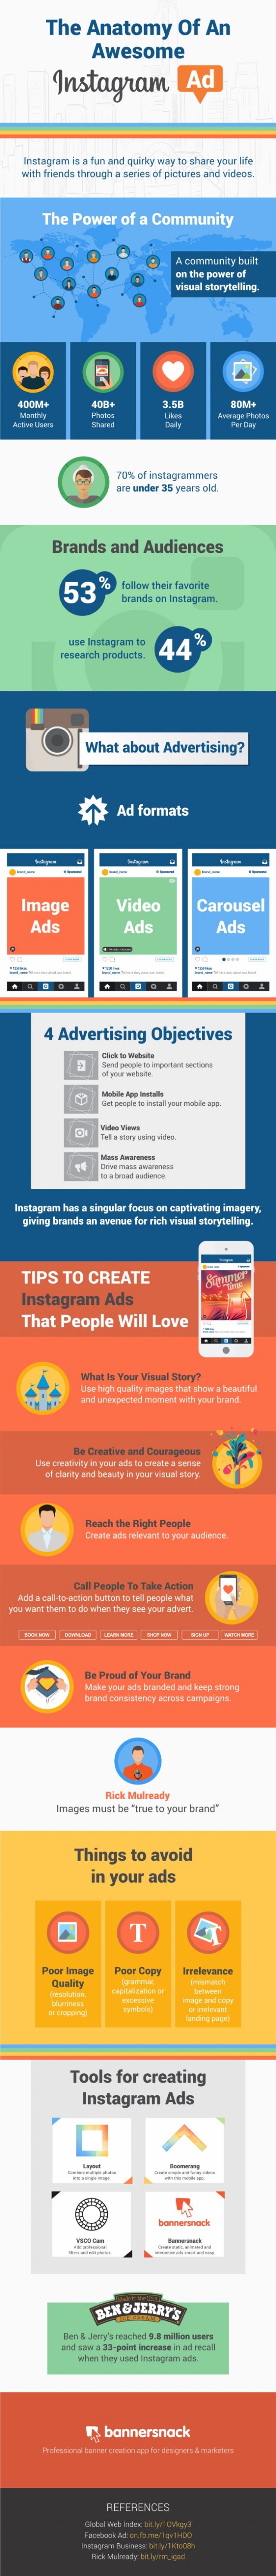 Instagram : Anatomie de la publicité en infographie